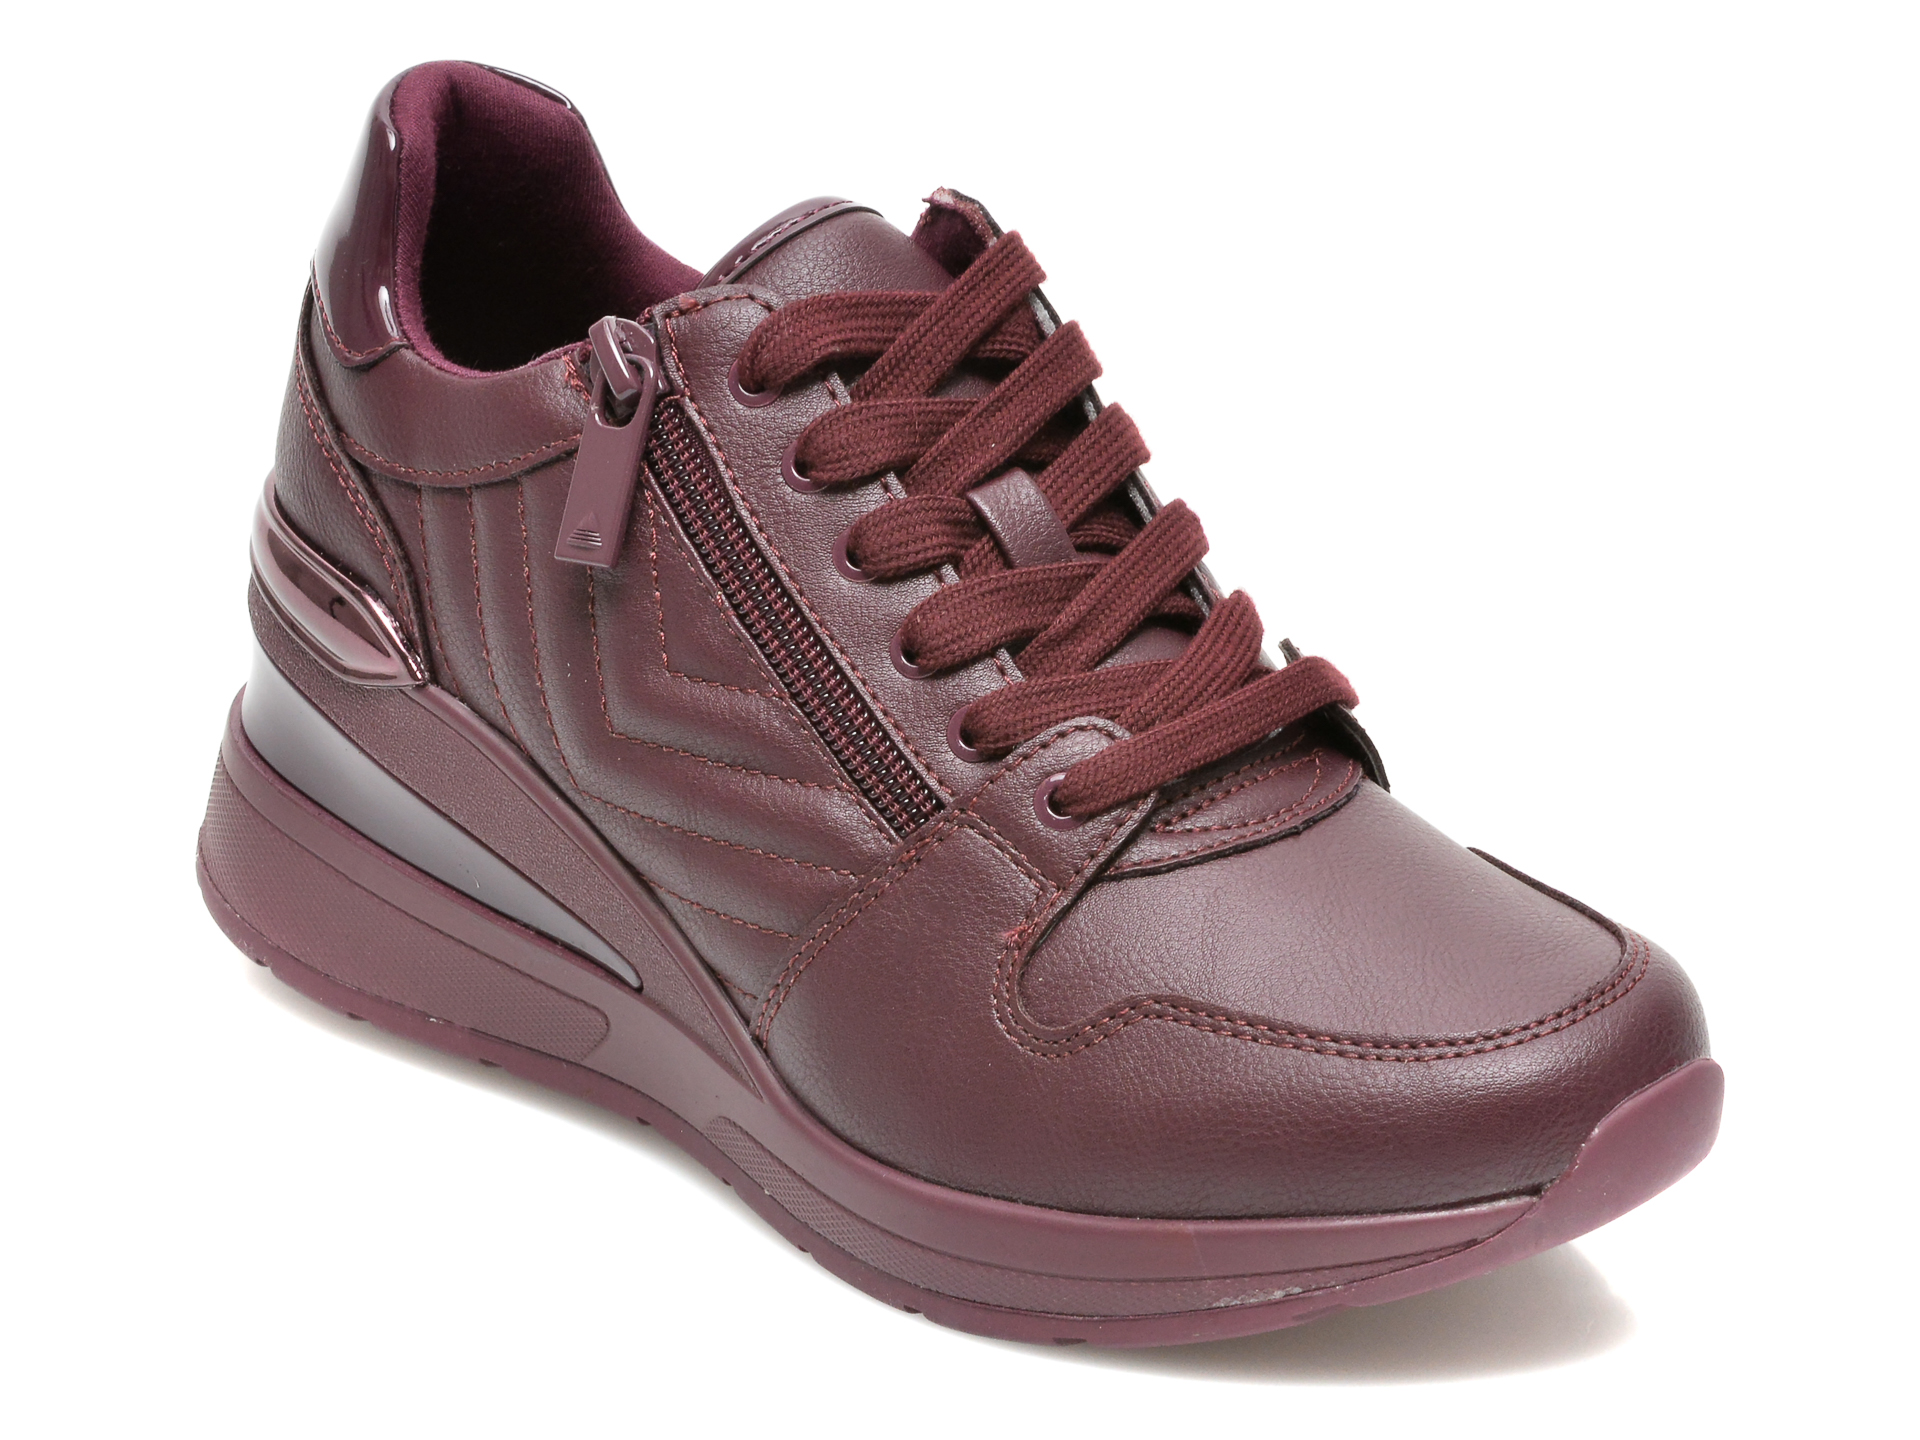 Pantofi sport ALDO visinii, ADWIWIA601, din piele ecologica Aldo imagine reduceri